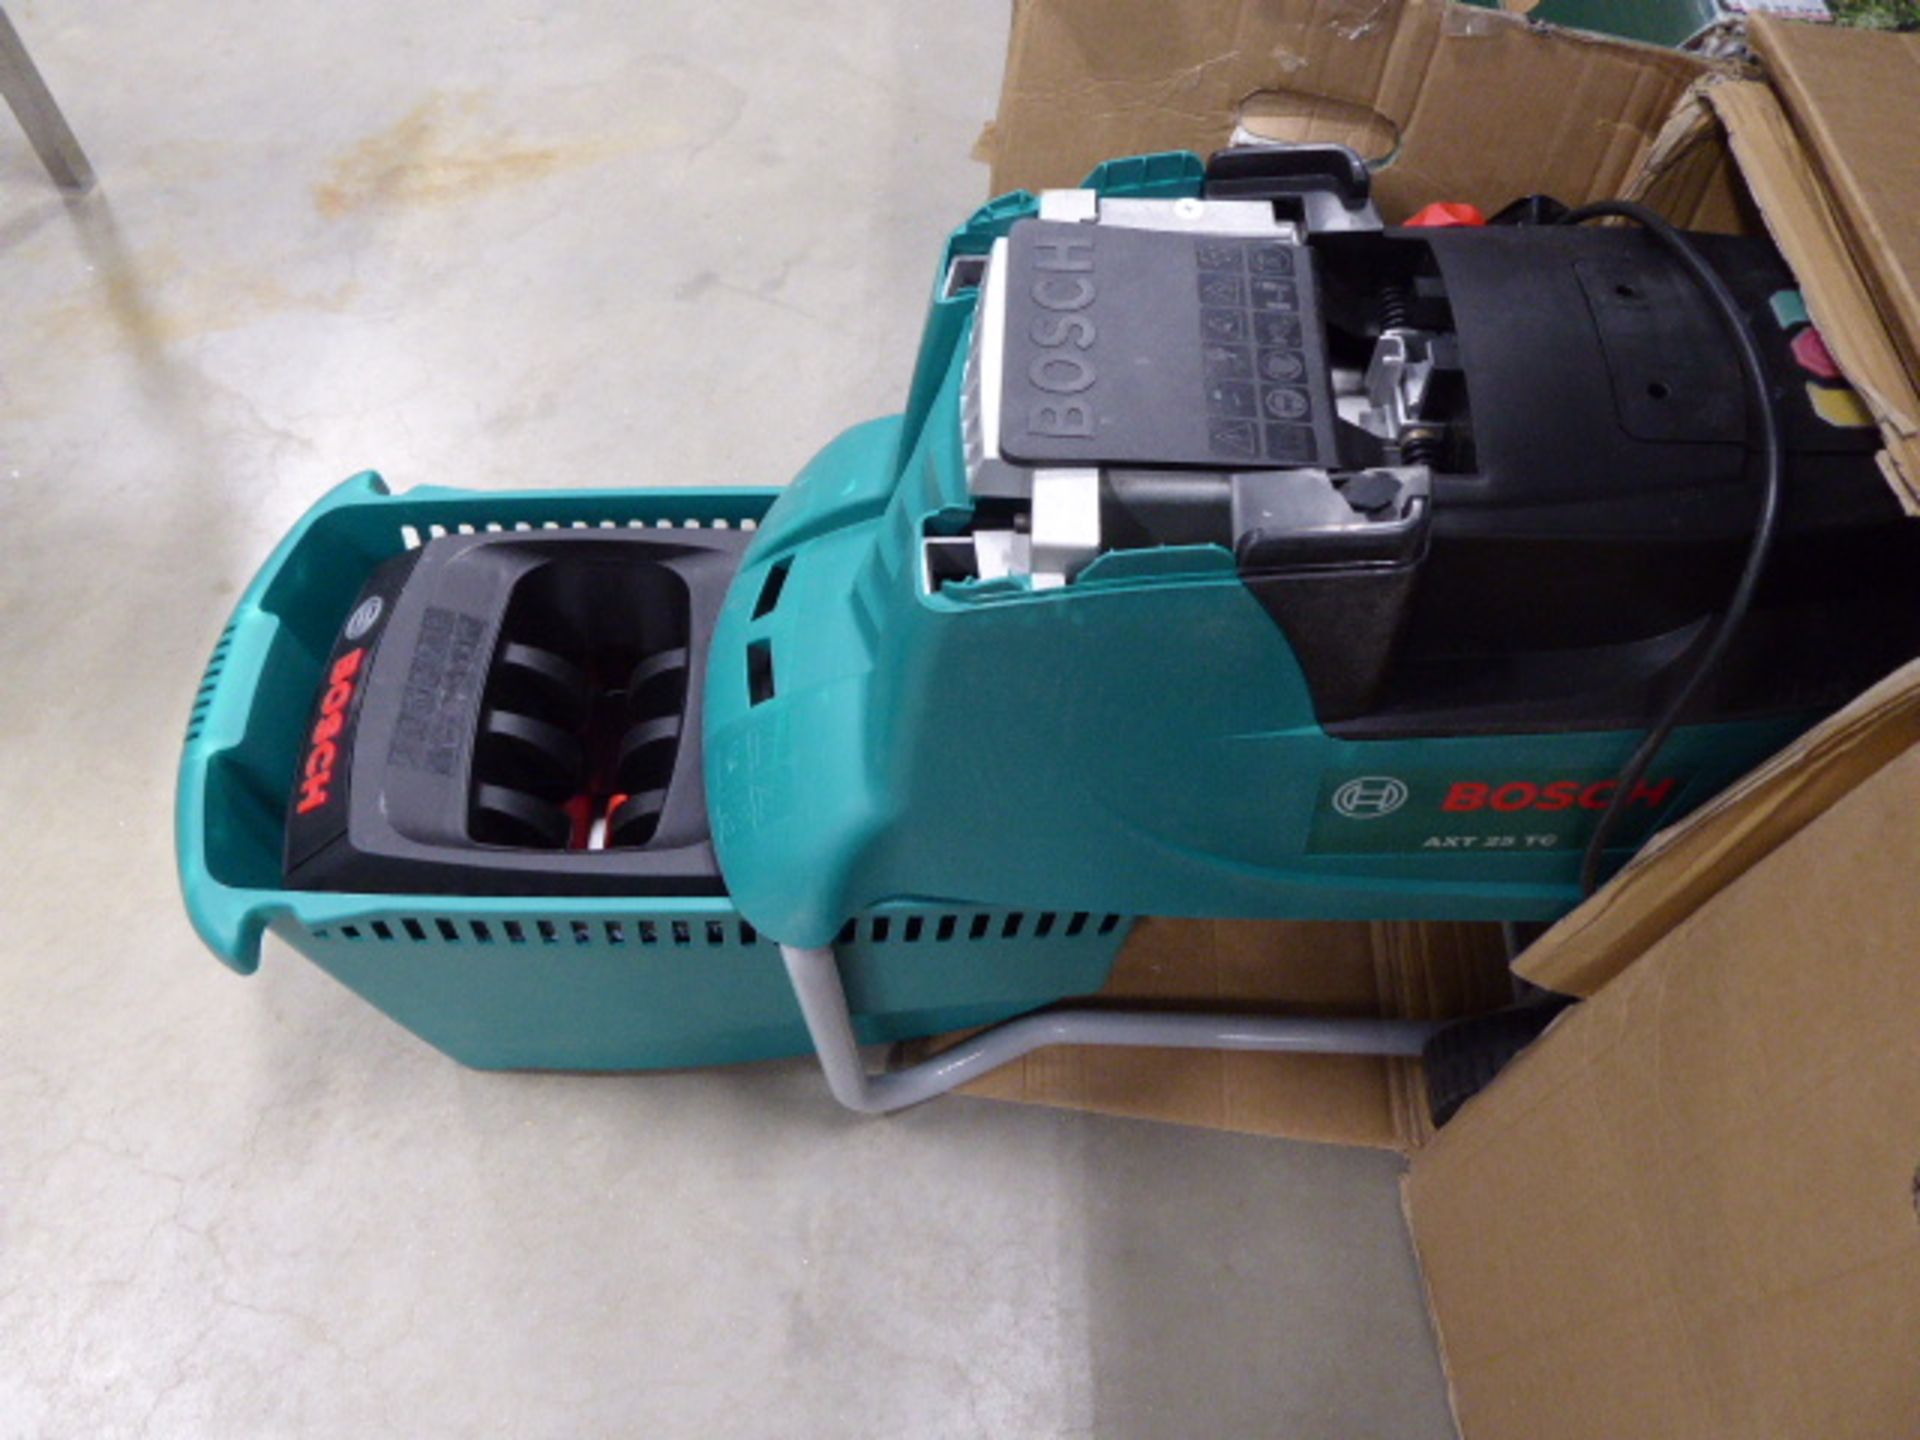 Bosch boxed AFT 25D electric garden shredder